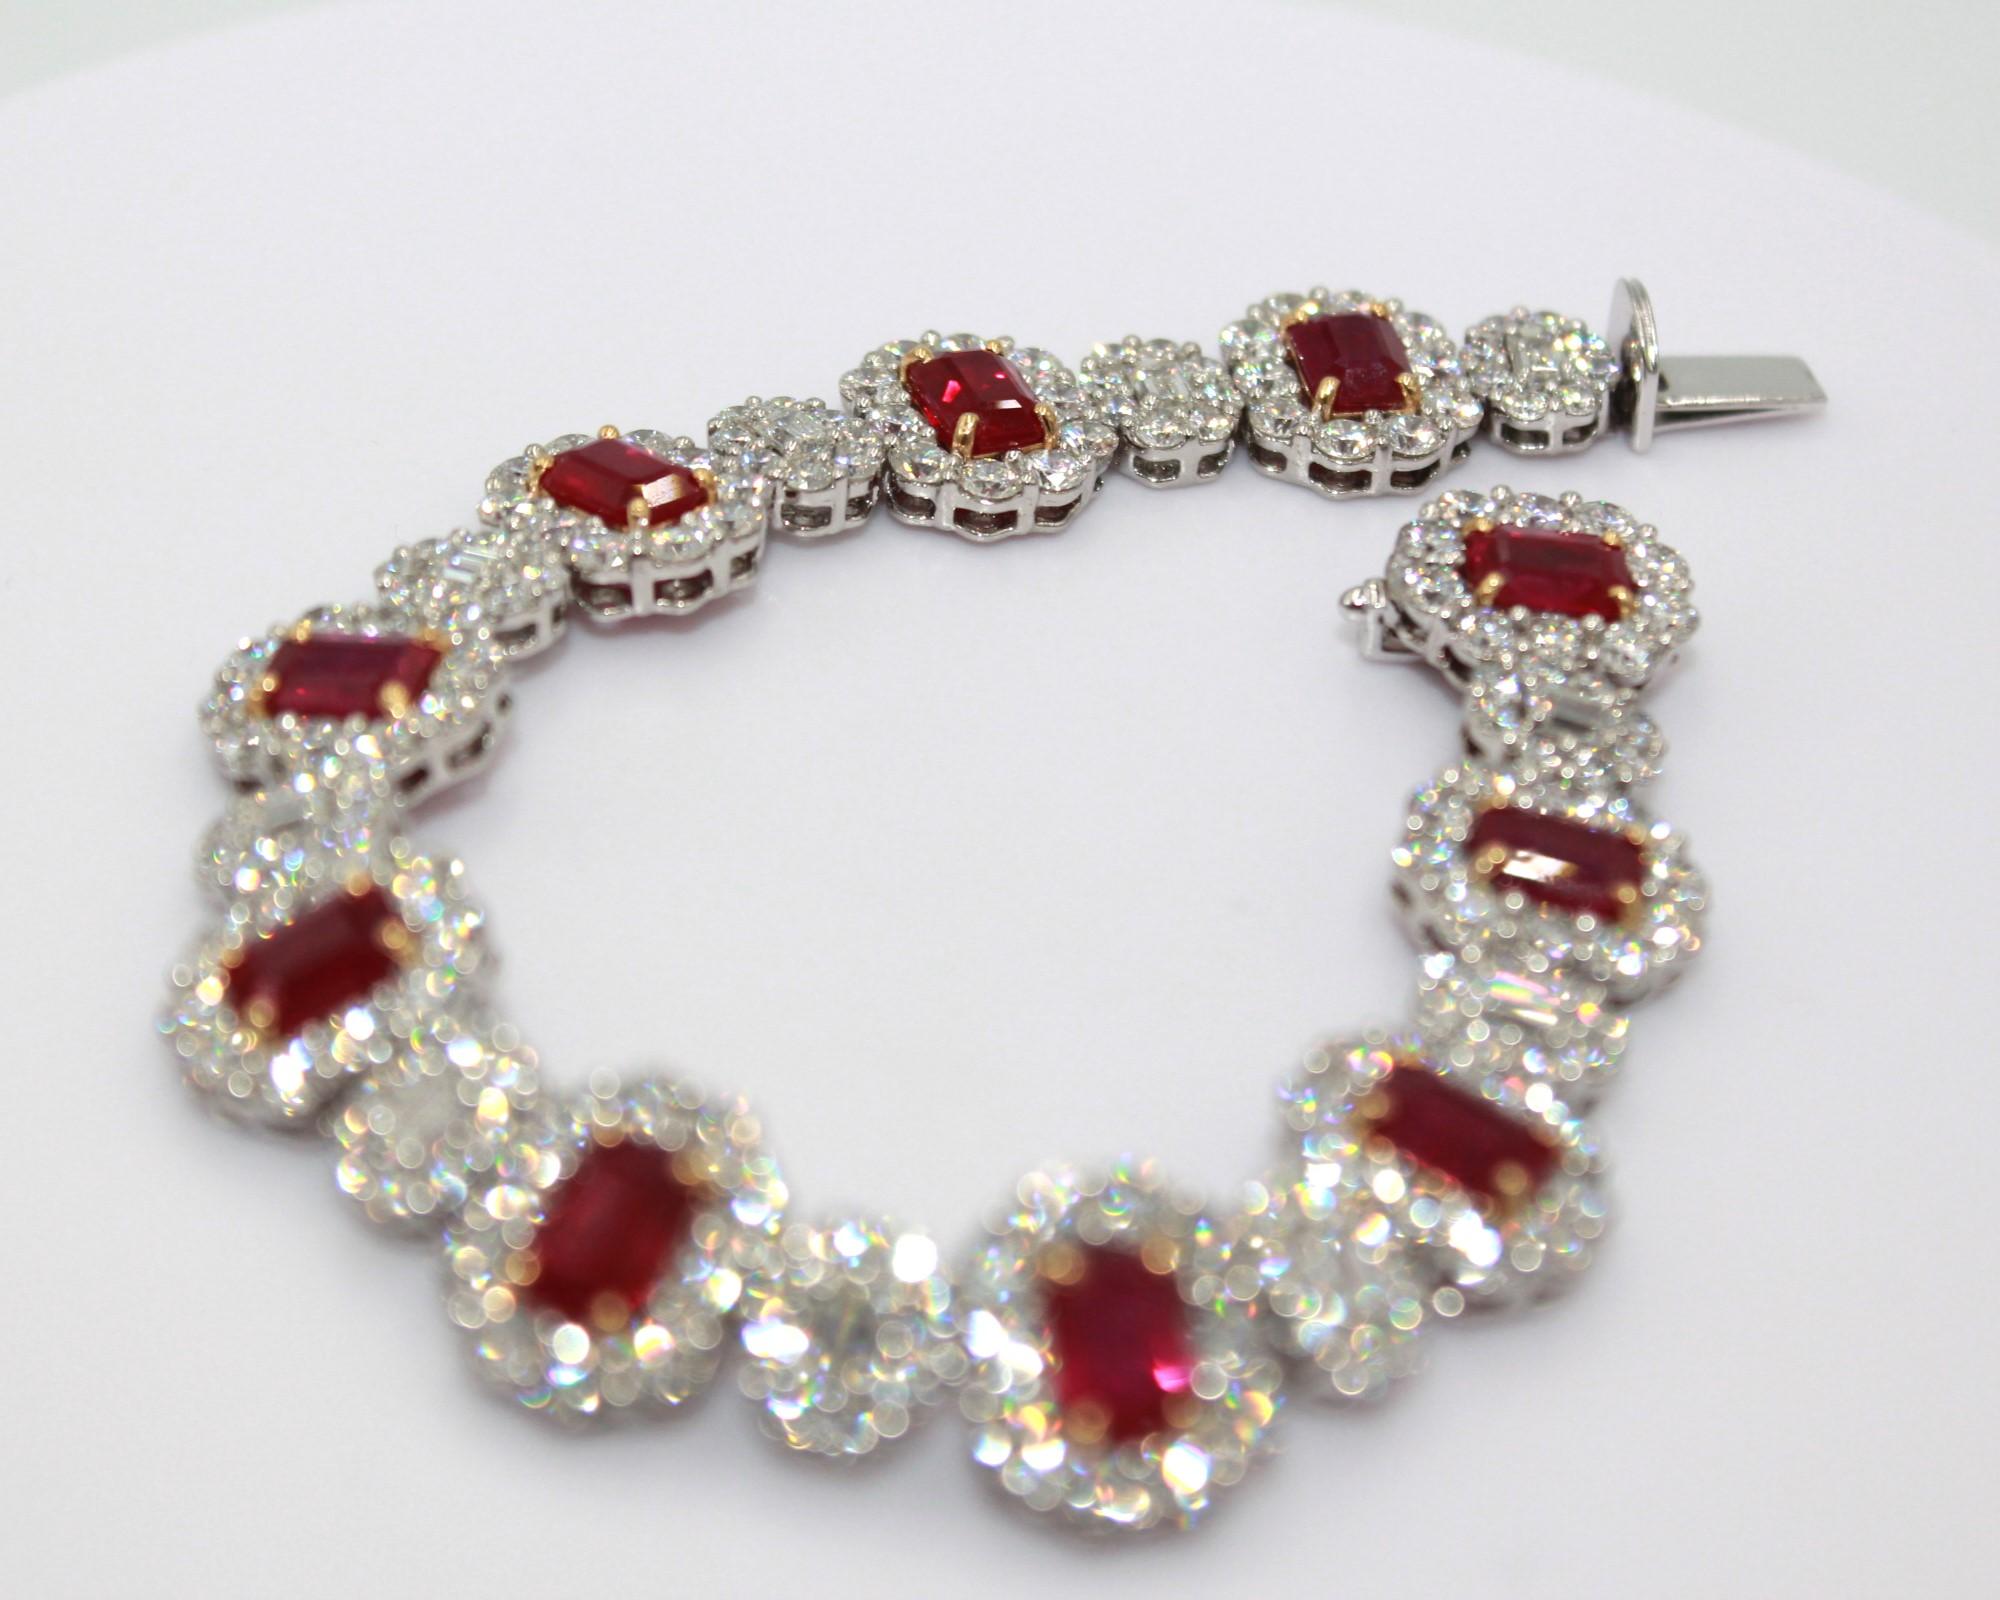 12,12 carats de rubis de Birmanie taillés en émeraude, pour un poids total de 13,58 carats de diamants. 

Ce superbe bracelet en rubis et diamants mettra en valeur votre singularité et votre élégance. 

Détails de l'article :
- Type : Bracelet
-